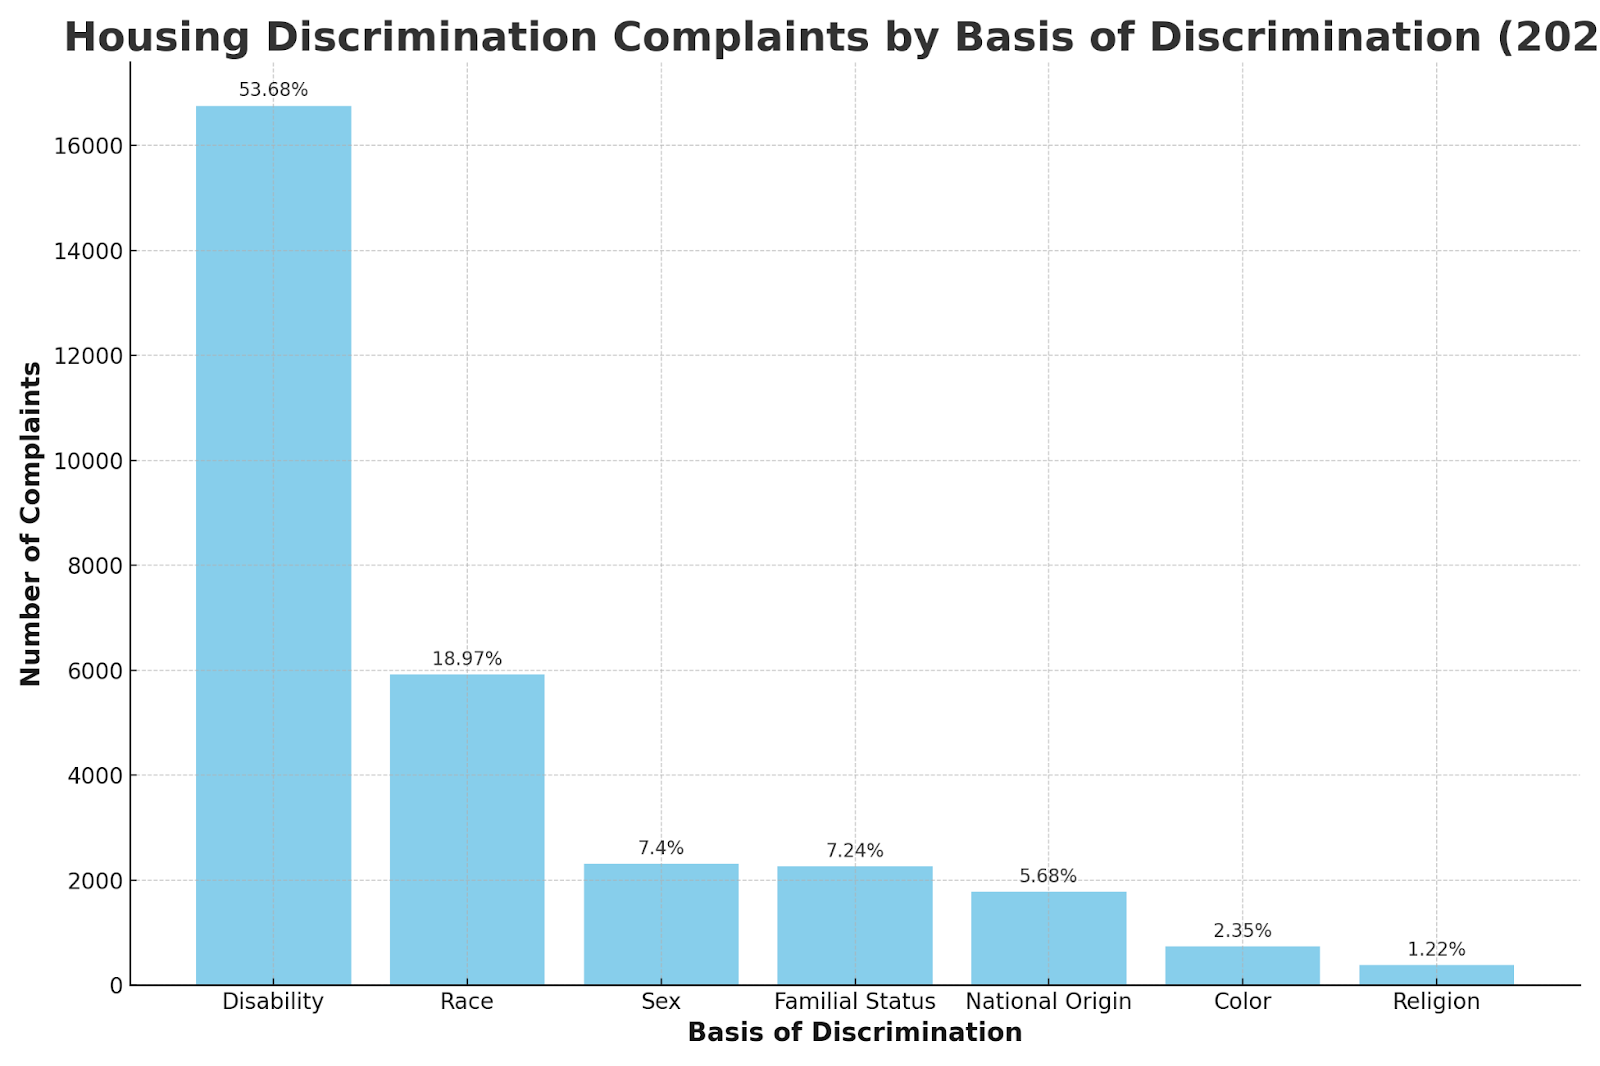 Housing discrimination complaints